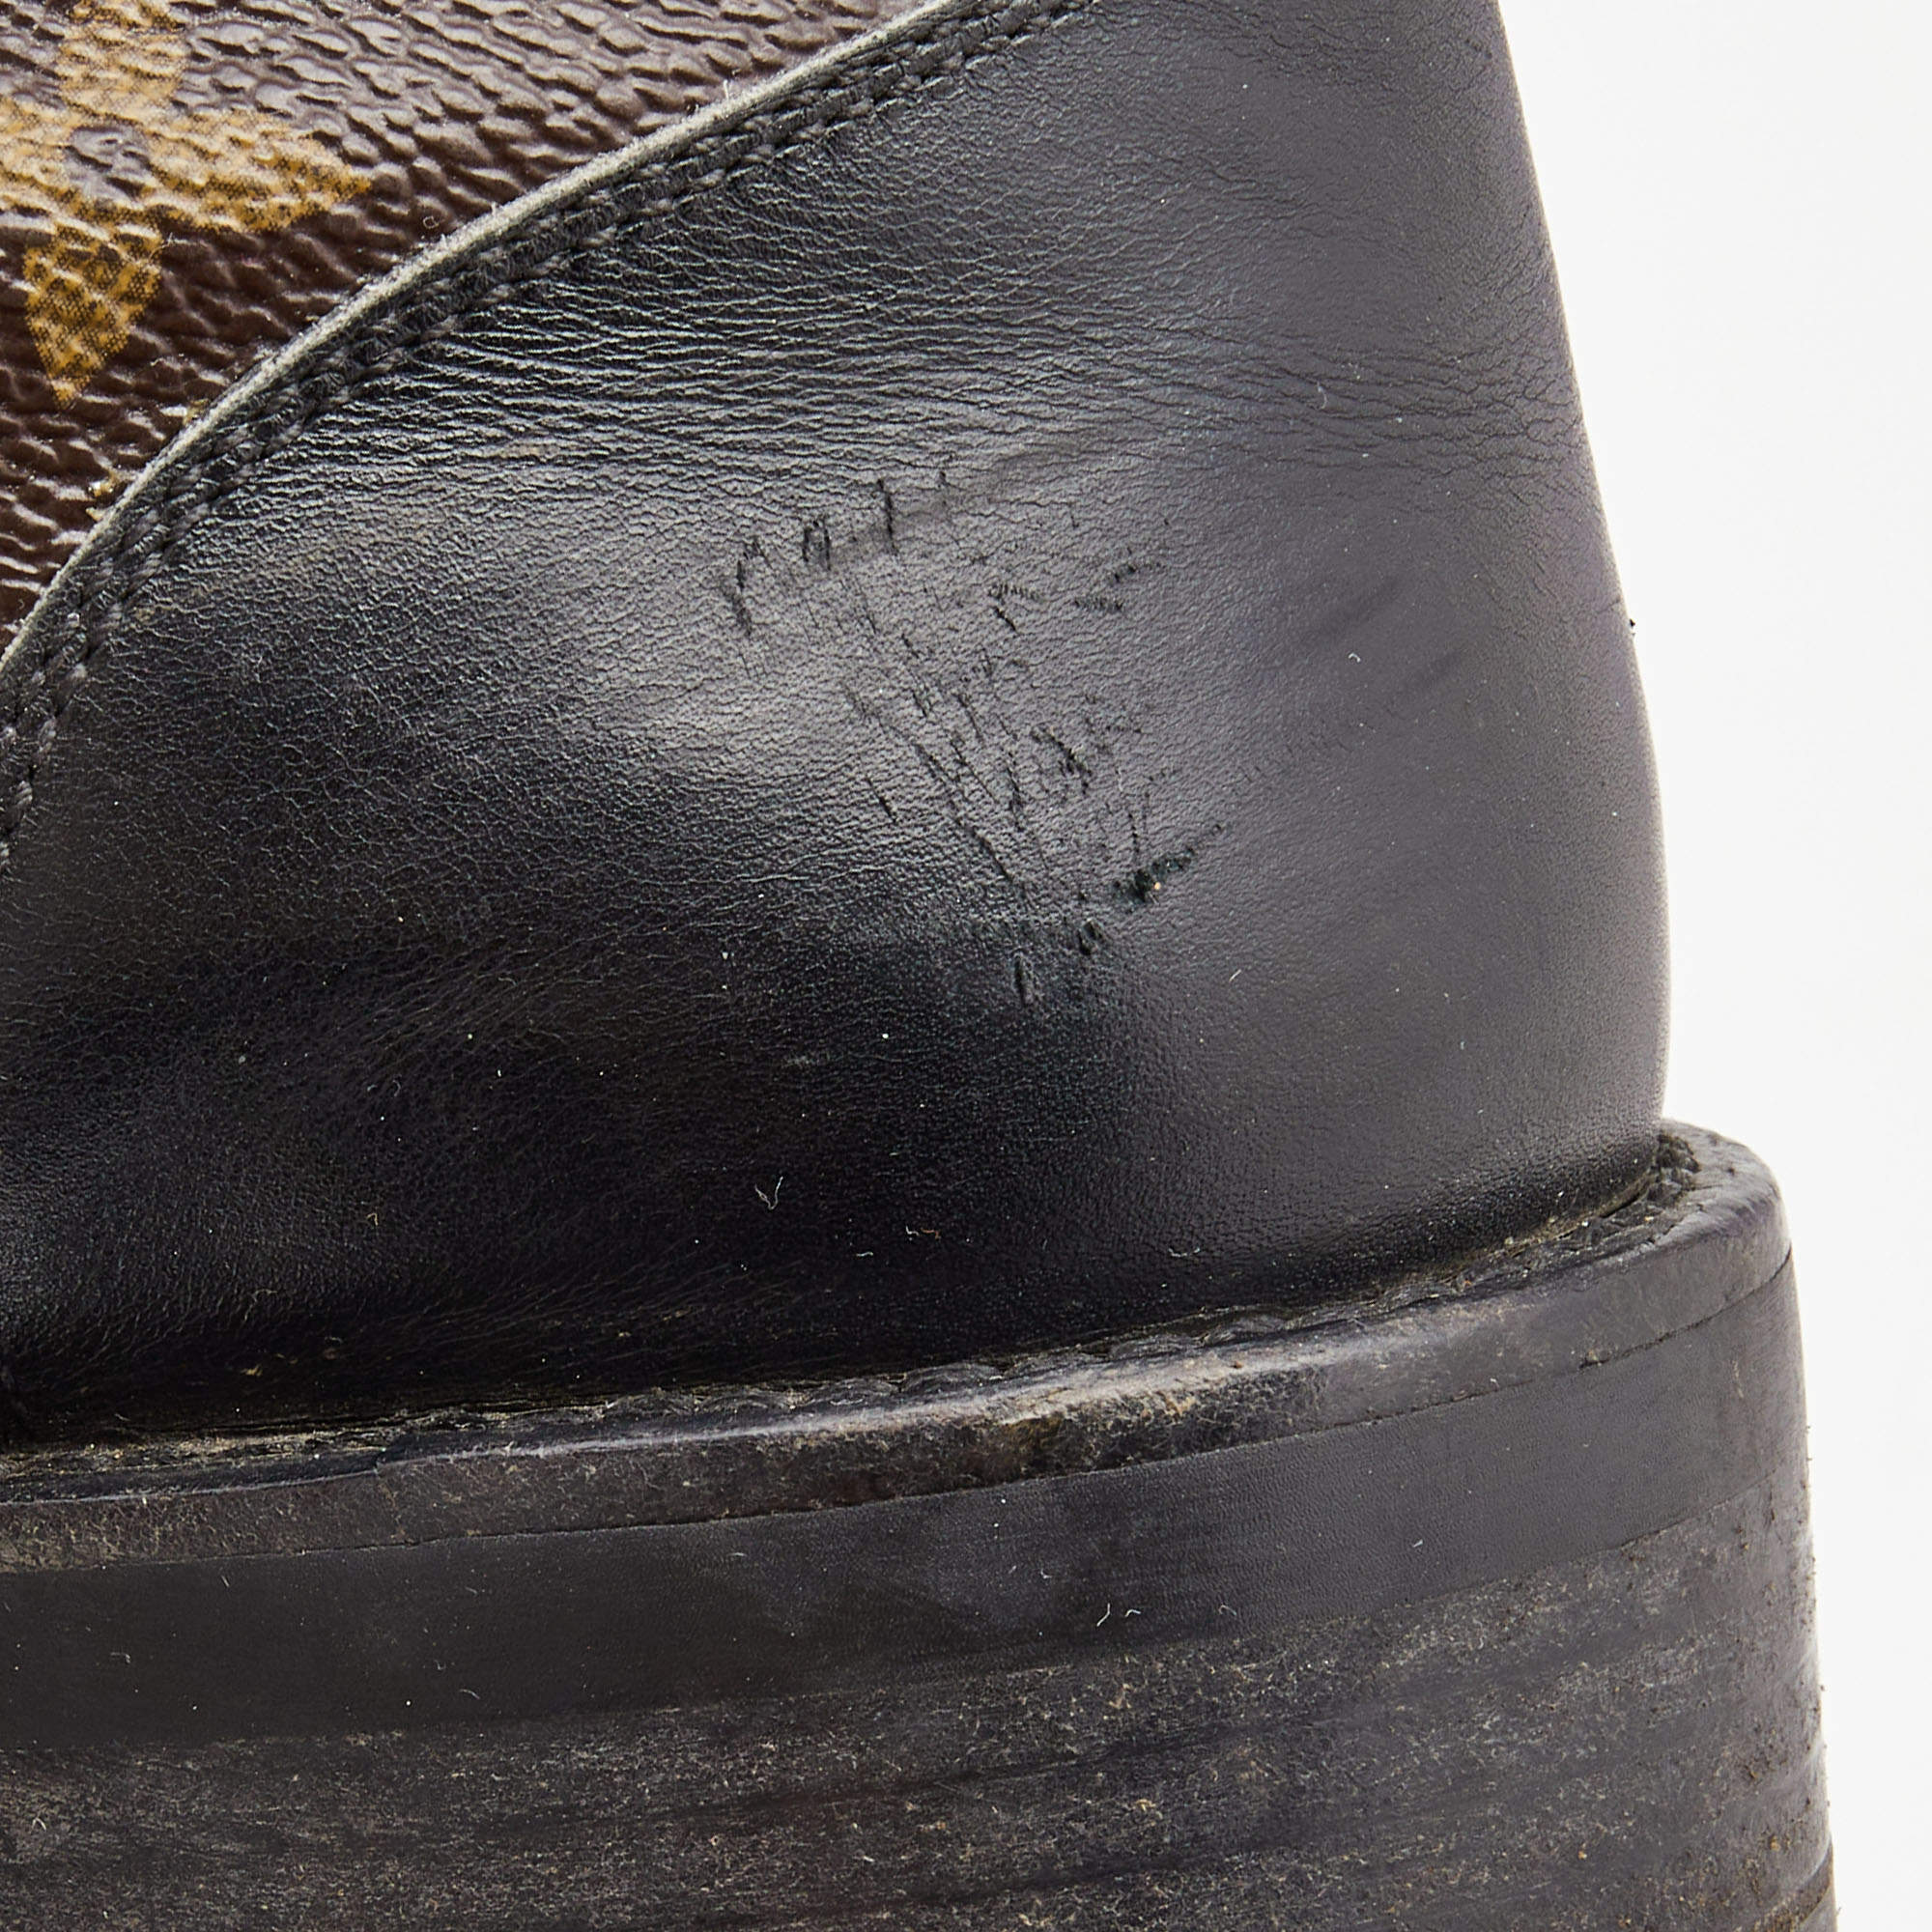 Louis Vuitton - Wonderland Flat Calfskin Ranger Boots Black 39